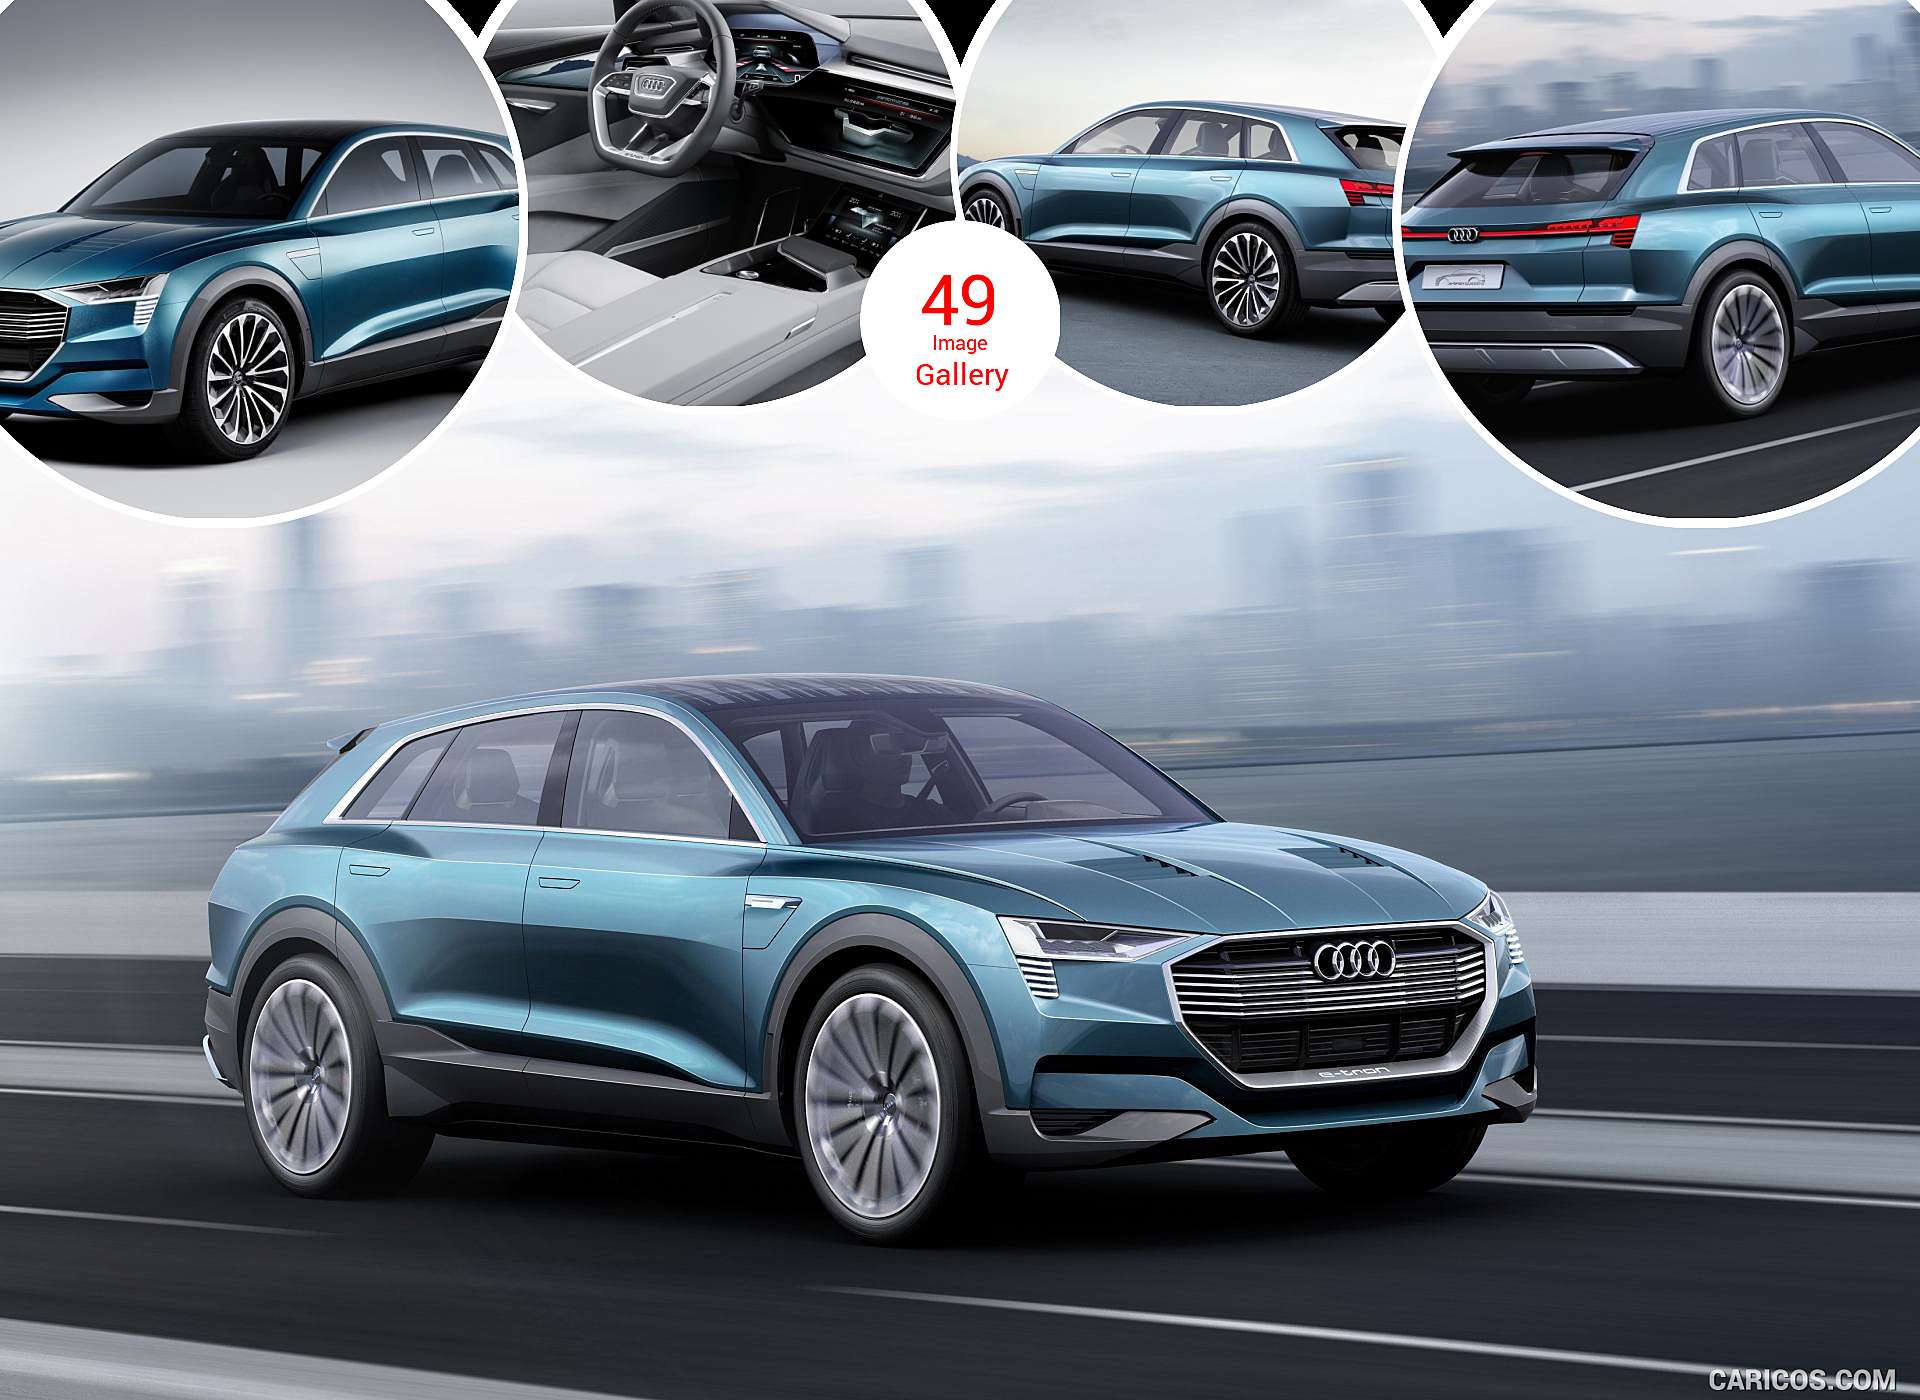 2015 Audi e-tron Quattro SUV Concept